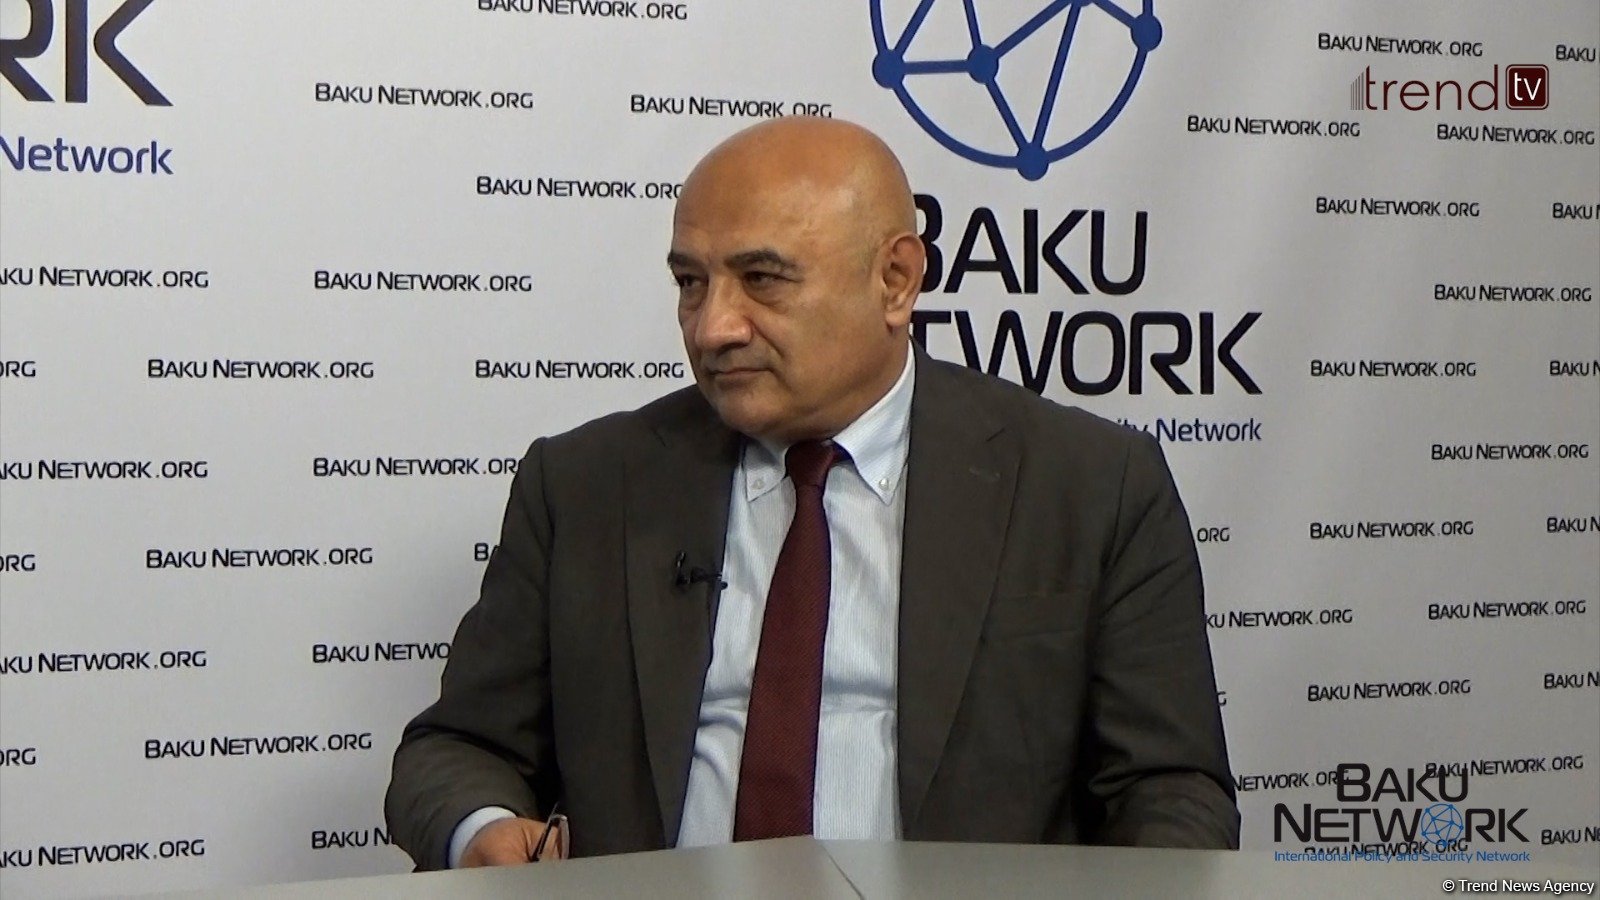 Азербайджан и Армения должны двигаться в сторону мира - Фархад Халилов в передаче "Диалог с Тофиком Аббасовым" (ФОТО/ВИДЕО)